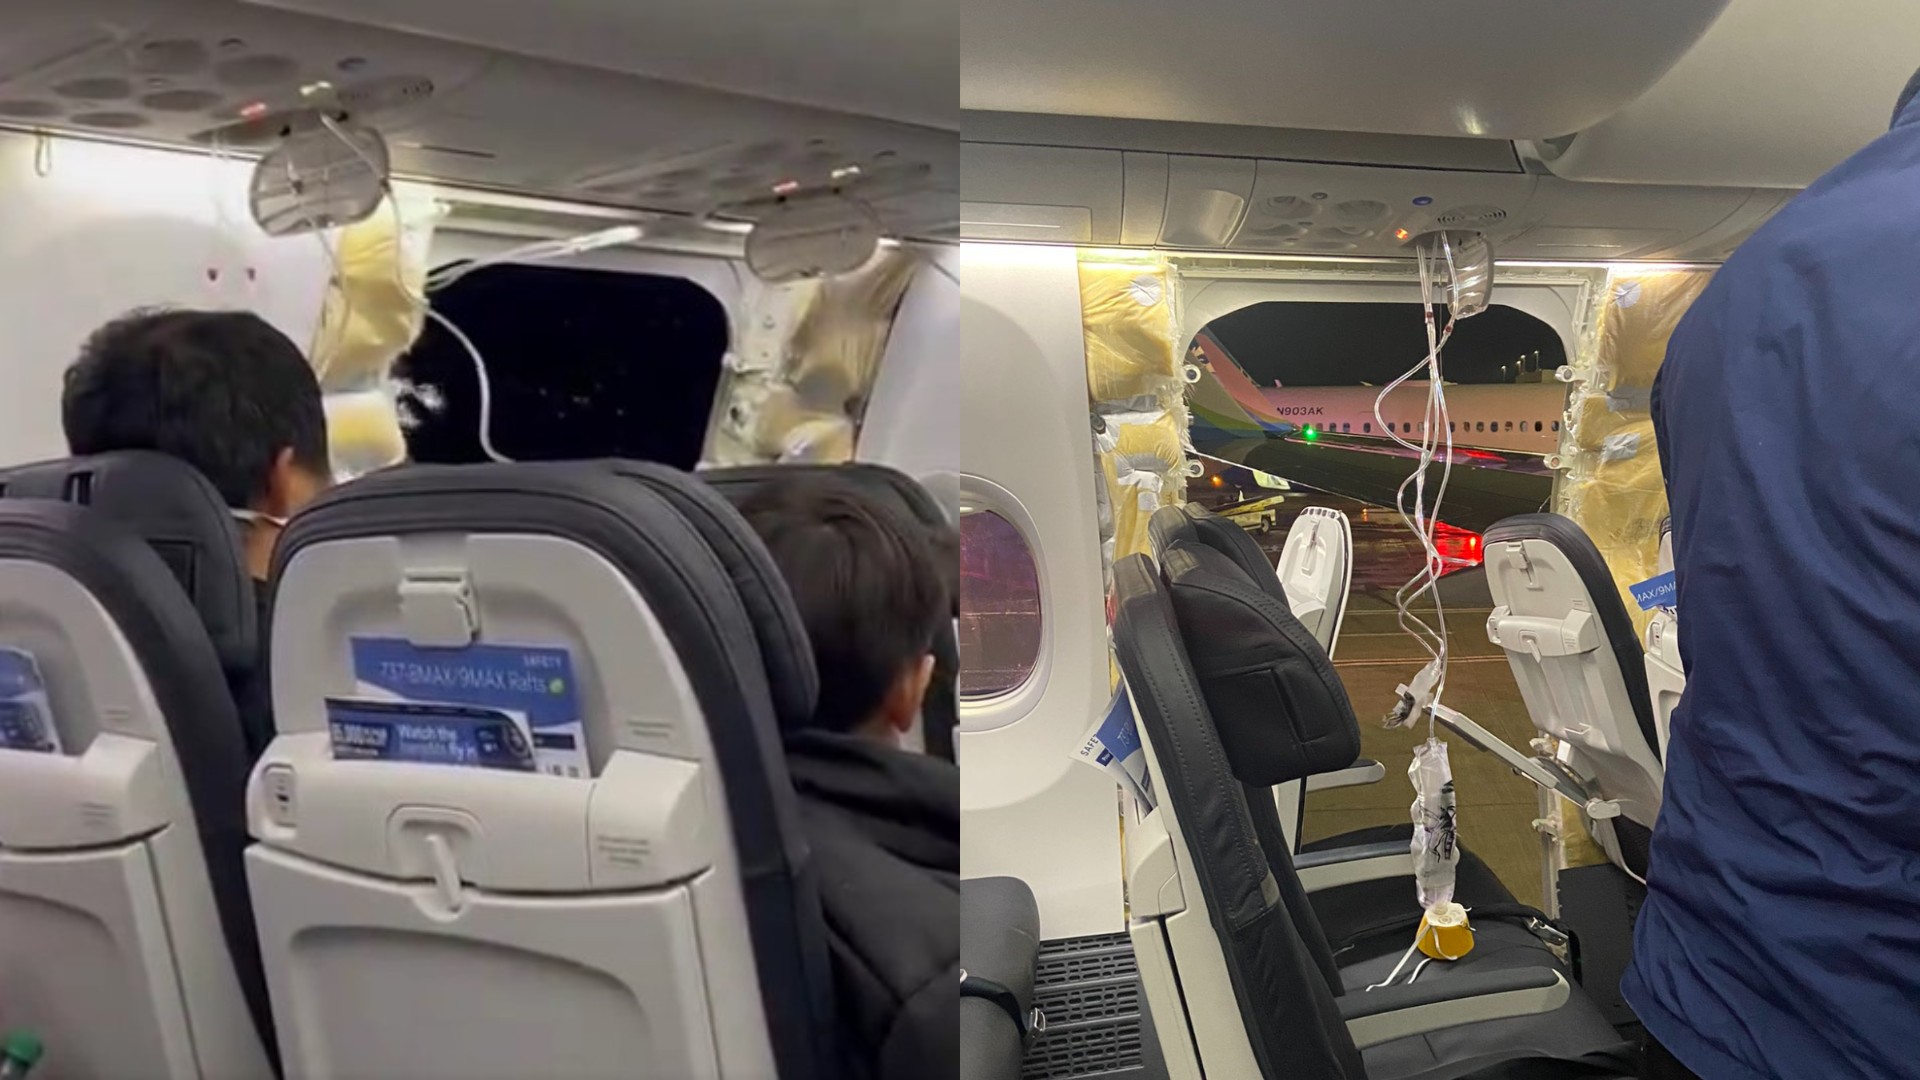 Vídeo: Avião perde janela durante voo e passageiros registram momento desesperador